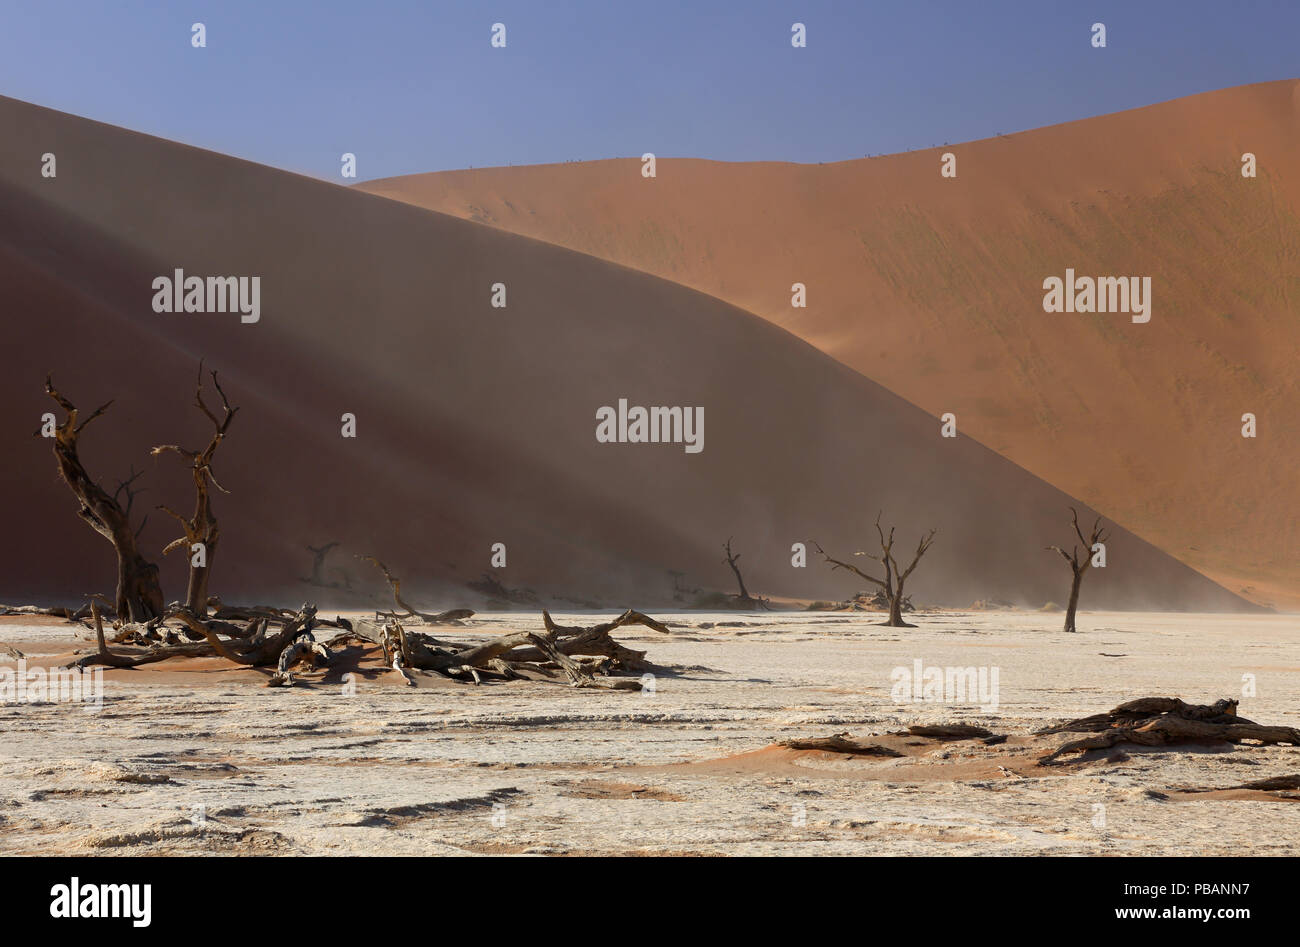 Chameau anciens arbres épineux (Acacia erioloba) à Deadvlei, Namibie, avec Big Daddy, à 325m, la plus haute dune de sable dans le monde. Banque D'Images